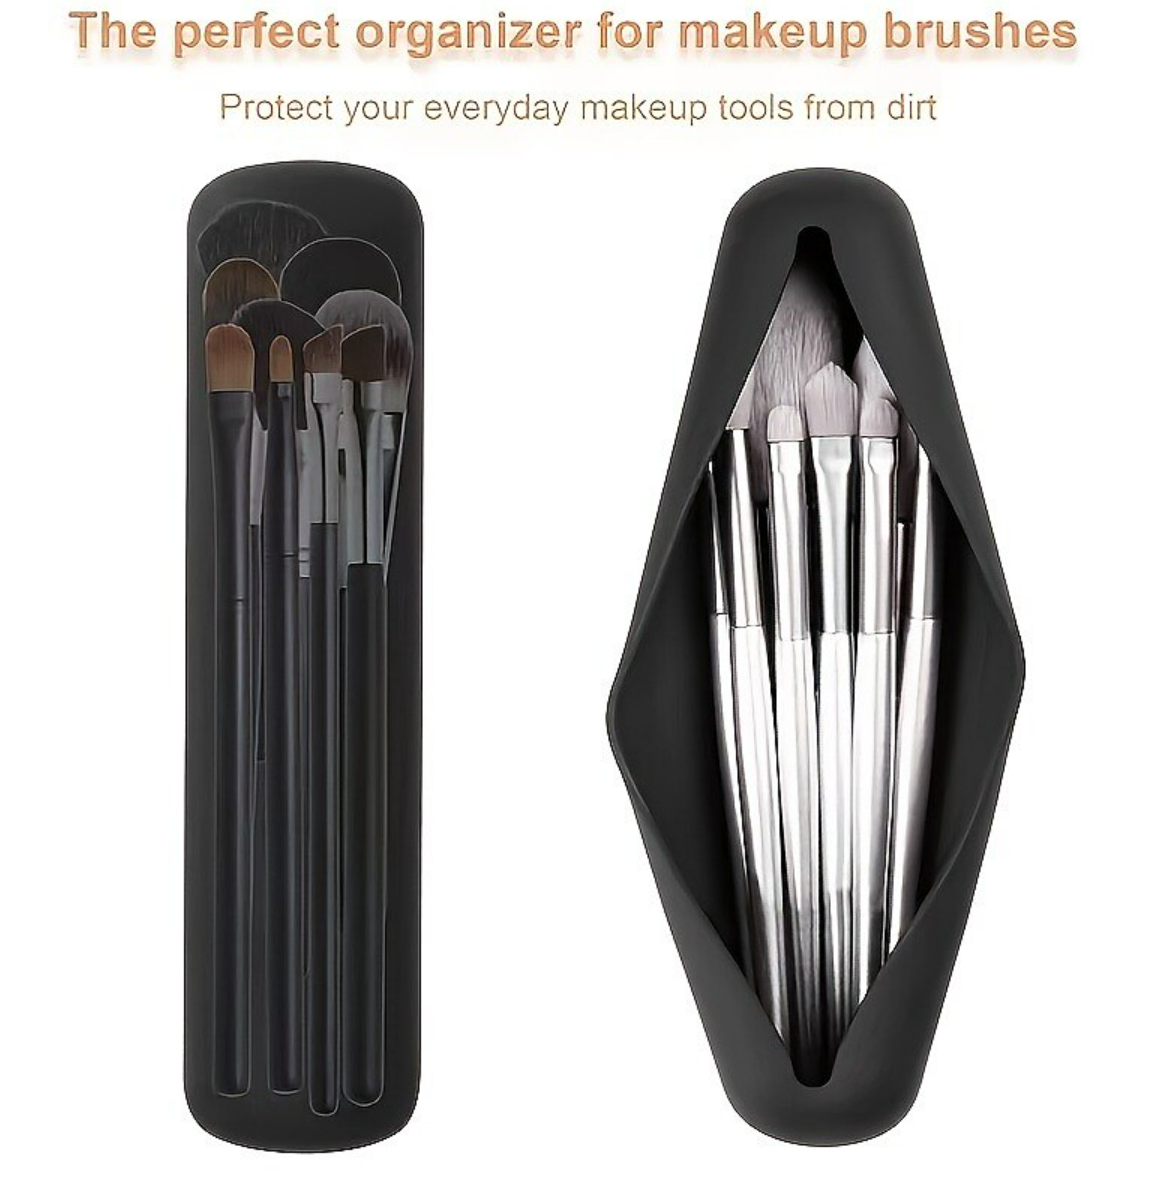 Travel Makeup Brush Holder Portable Modern Silicone Makeup Brush Holder Soft Stylish Makeup Tool Organizer For Travel